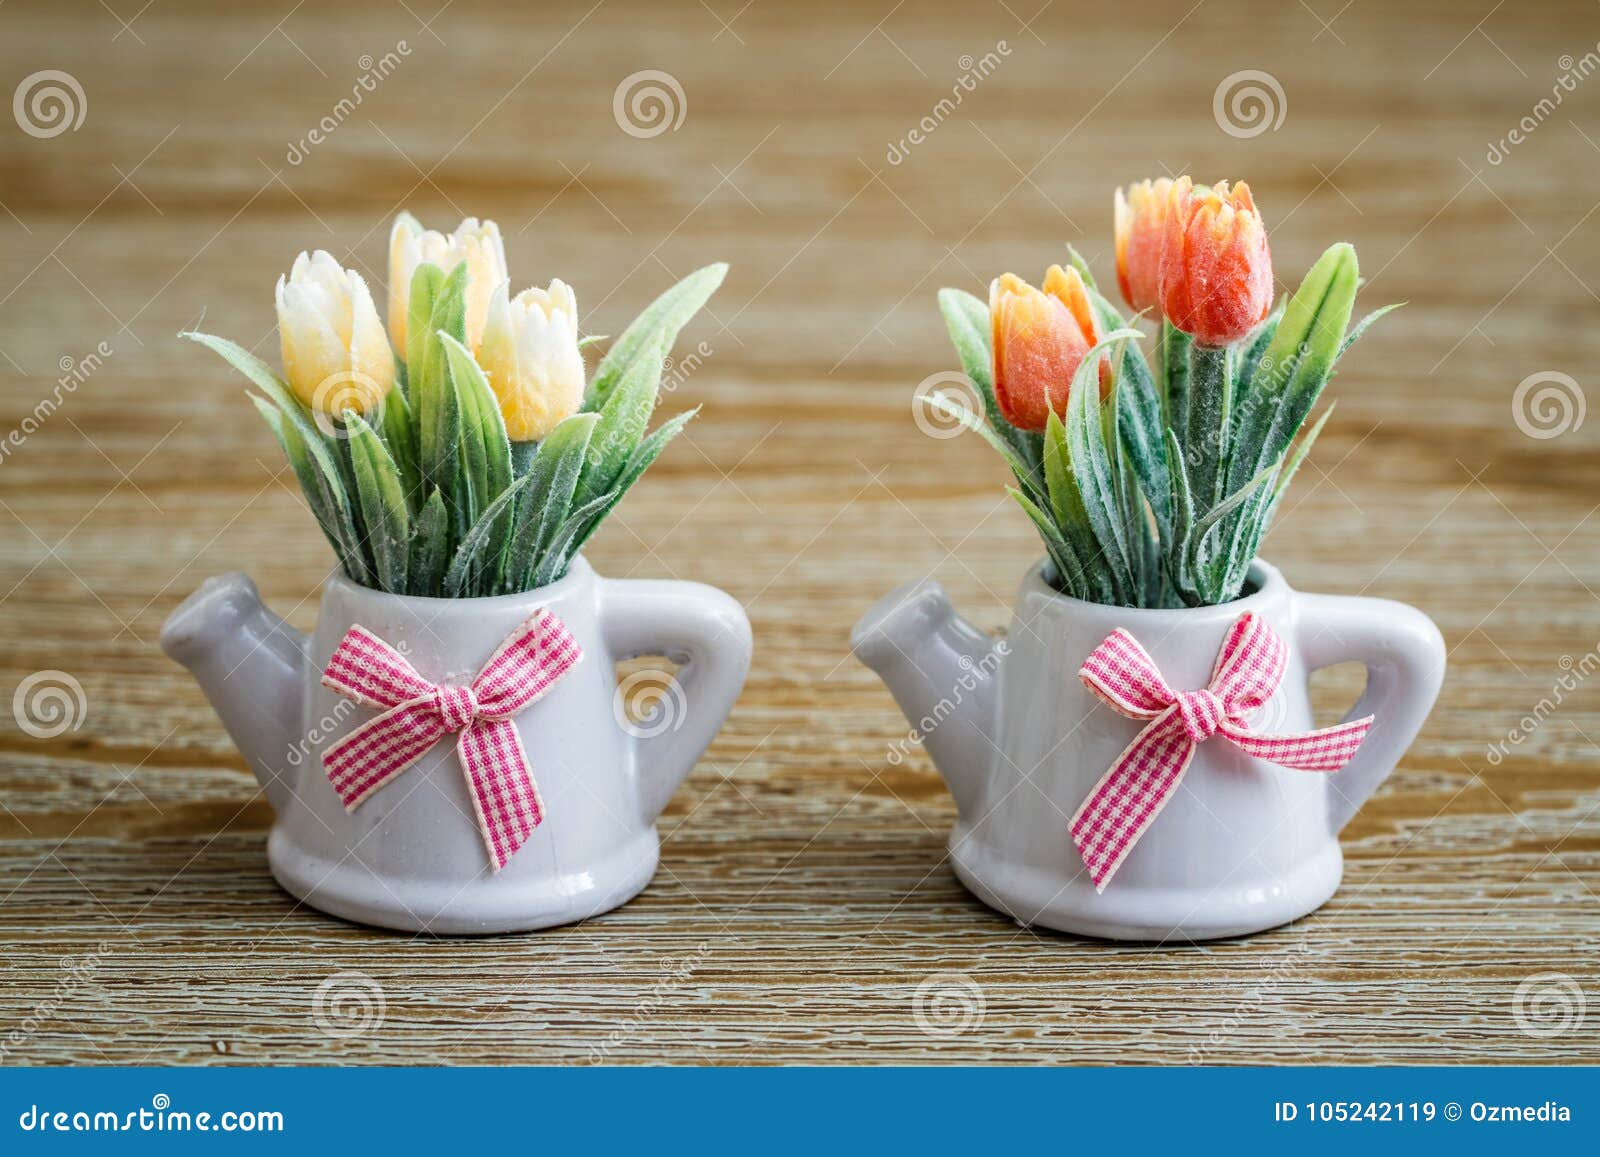 https://thumbs.dreamstime.com/z/tulipanes-artificiales-en-los-potes-blancos-de-la-porcelana-con-dise%C3%B1o-tetera-y-105242119.jpg